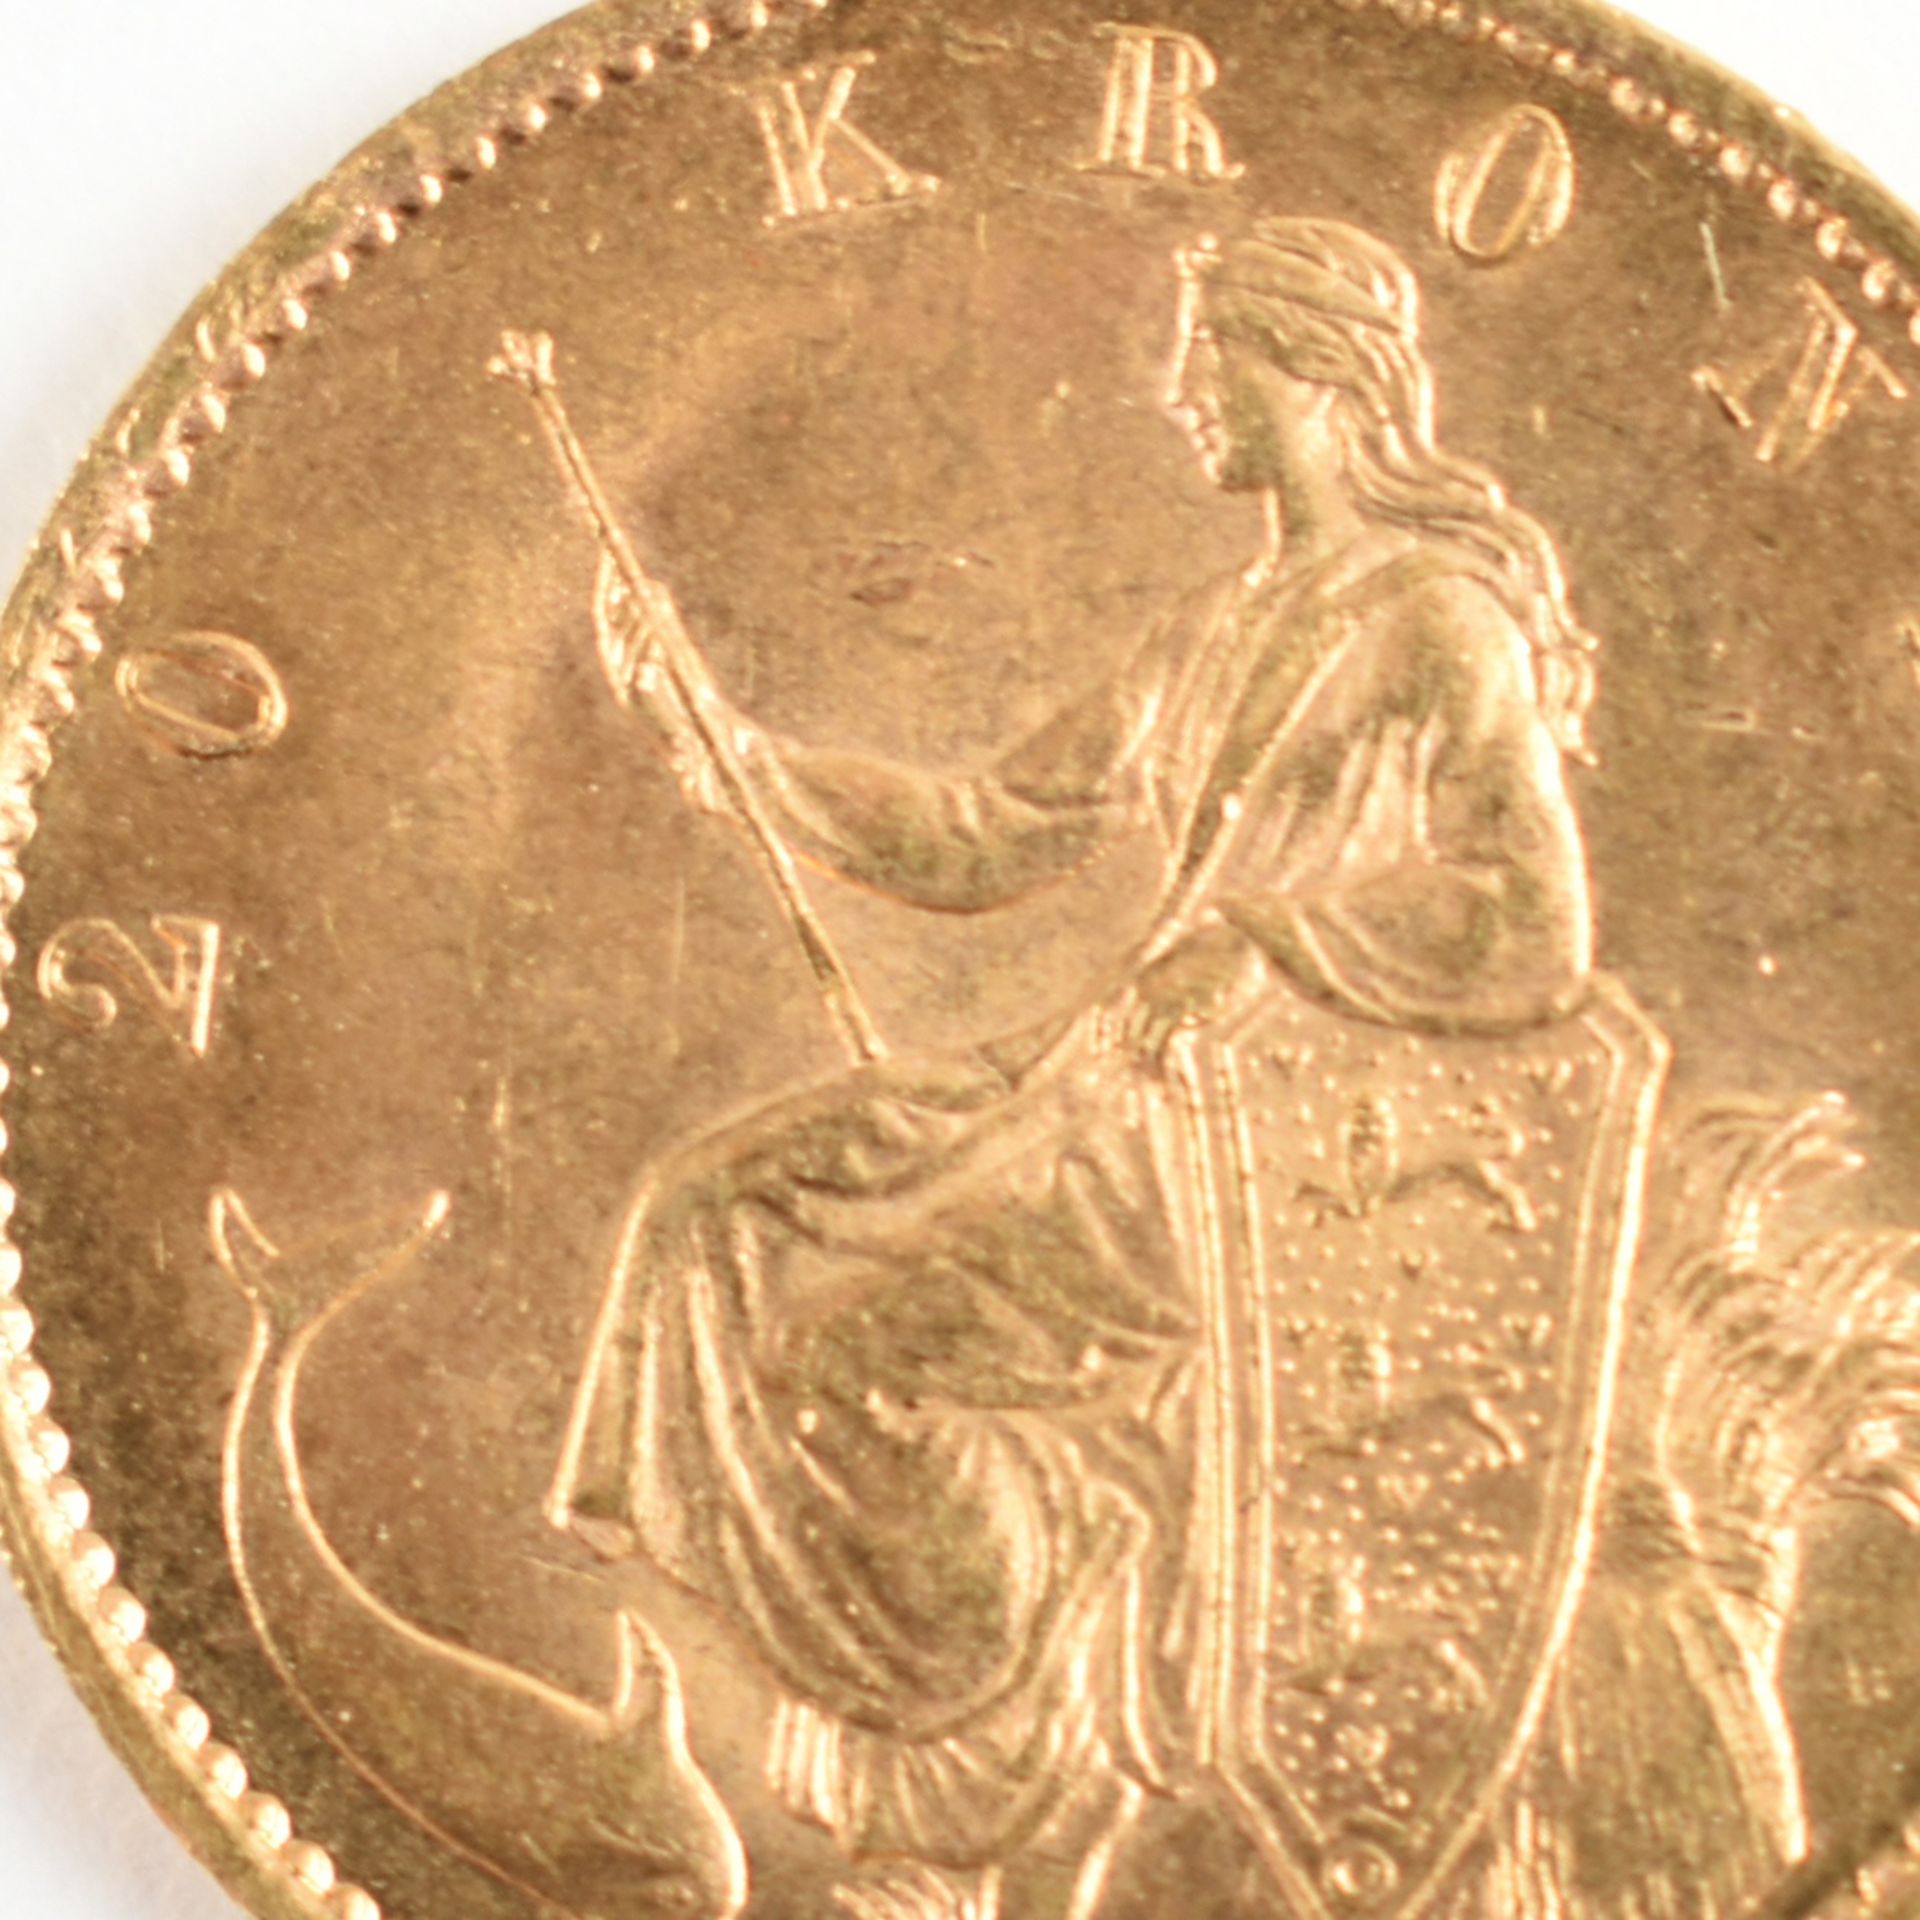 Goldmünze Dänemark 1873 20 Kroner in Gold, 900/1000, 8,96 g, av. Christian IX. König von Dänemark,